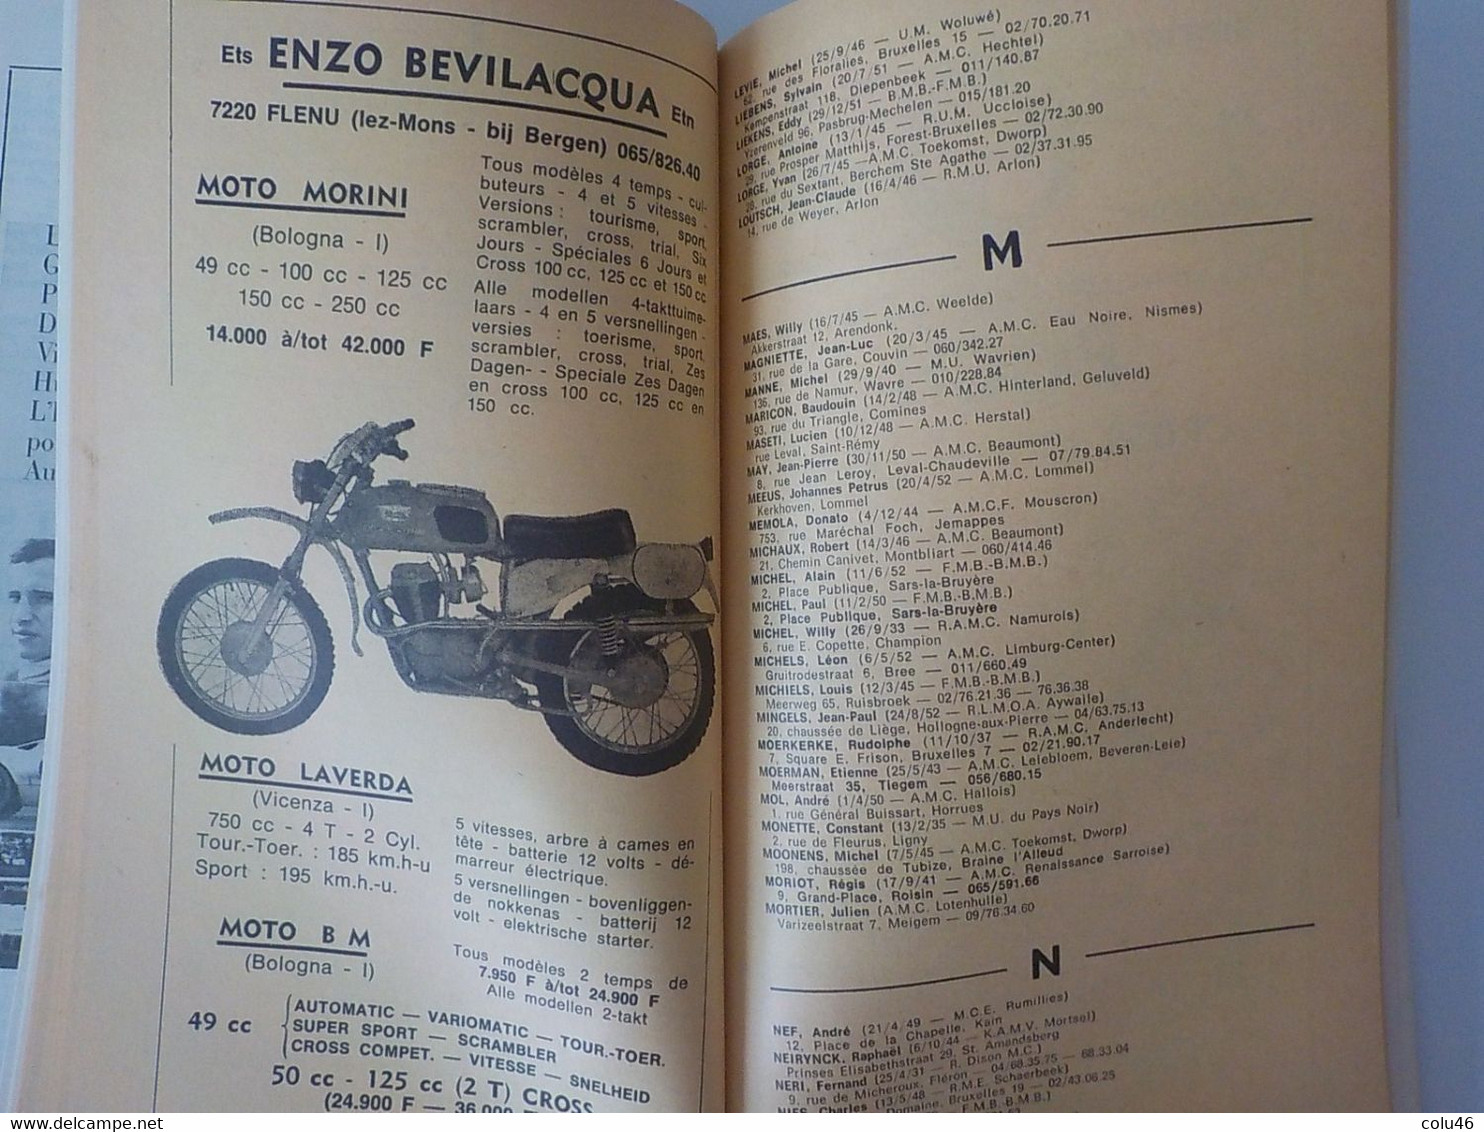 1970 Motor Cross par Walter Schwilden motocyclisme champions motos Joël Robert ...livre 420 pages